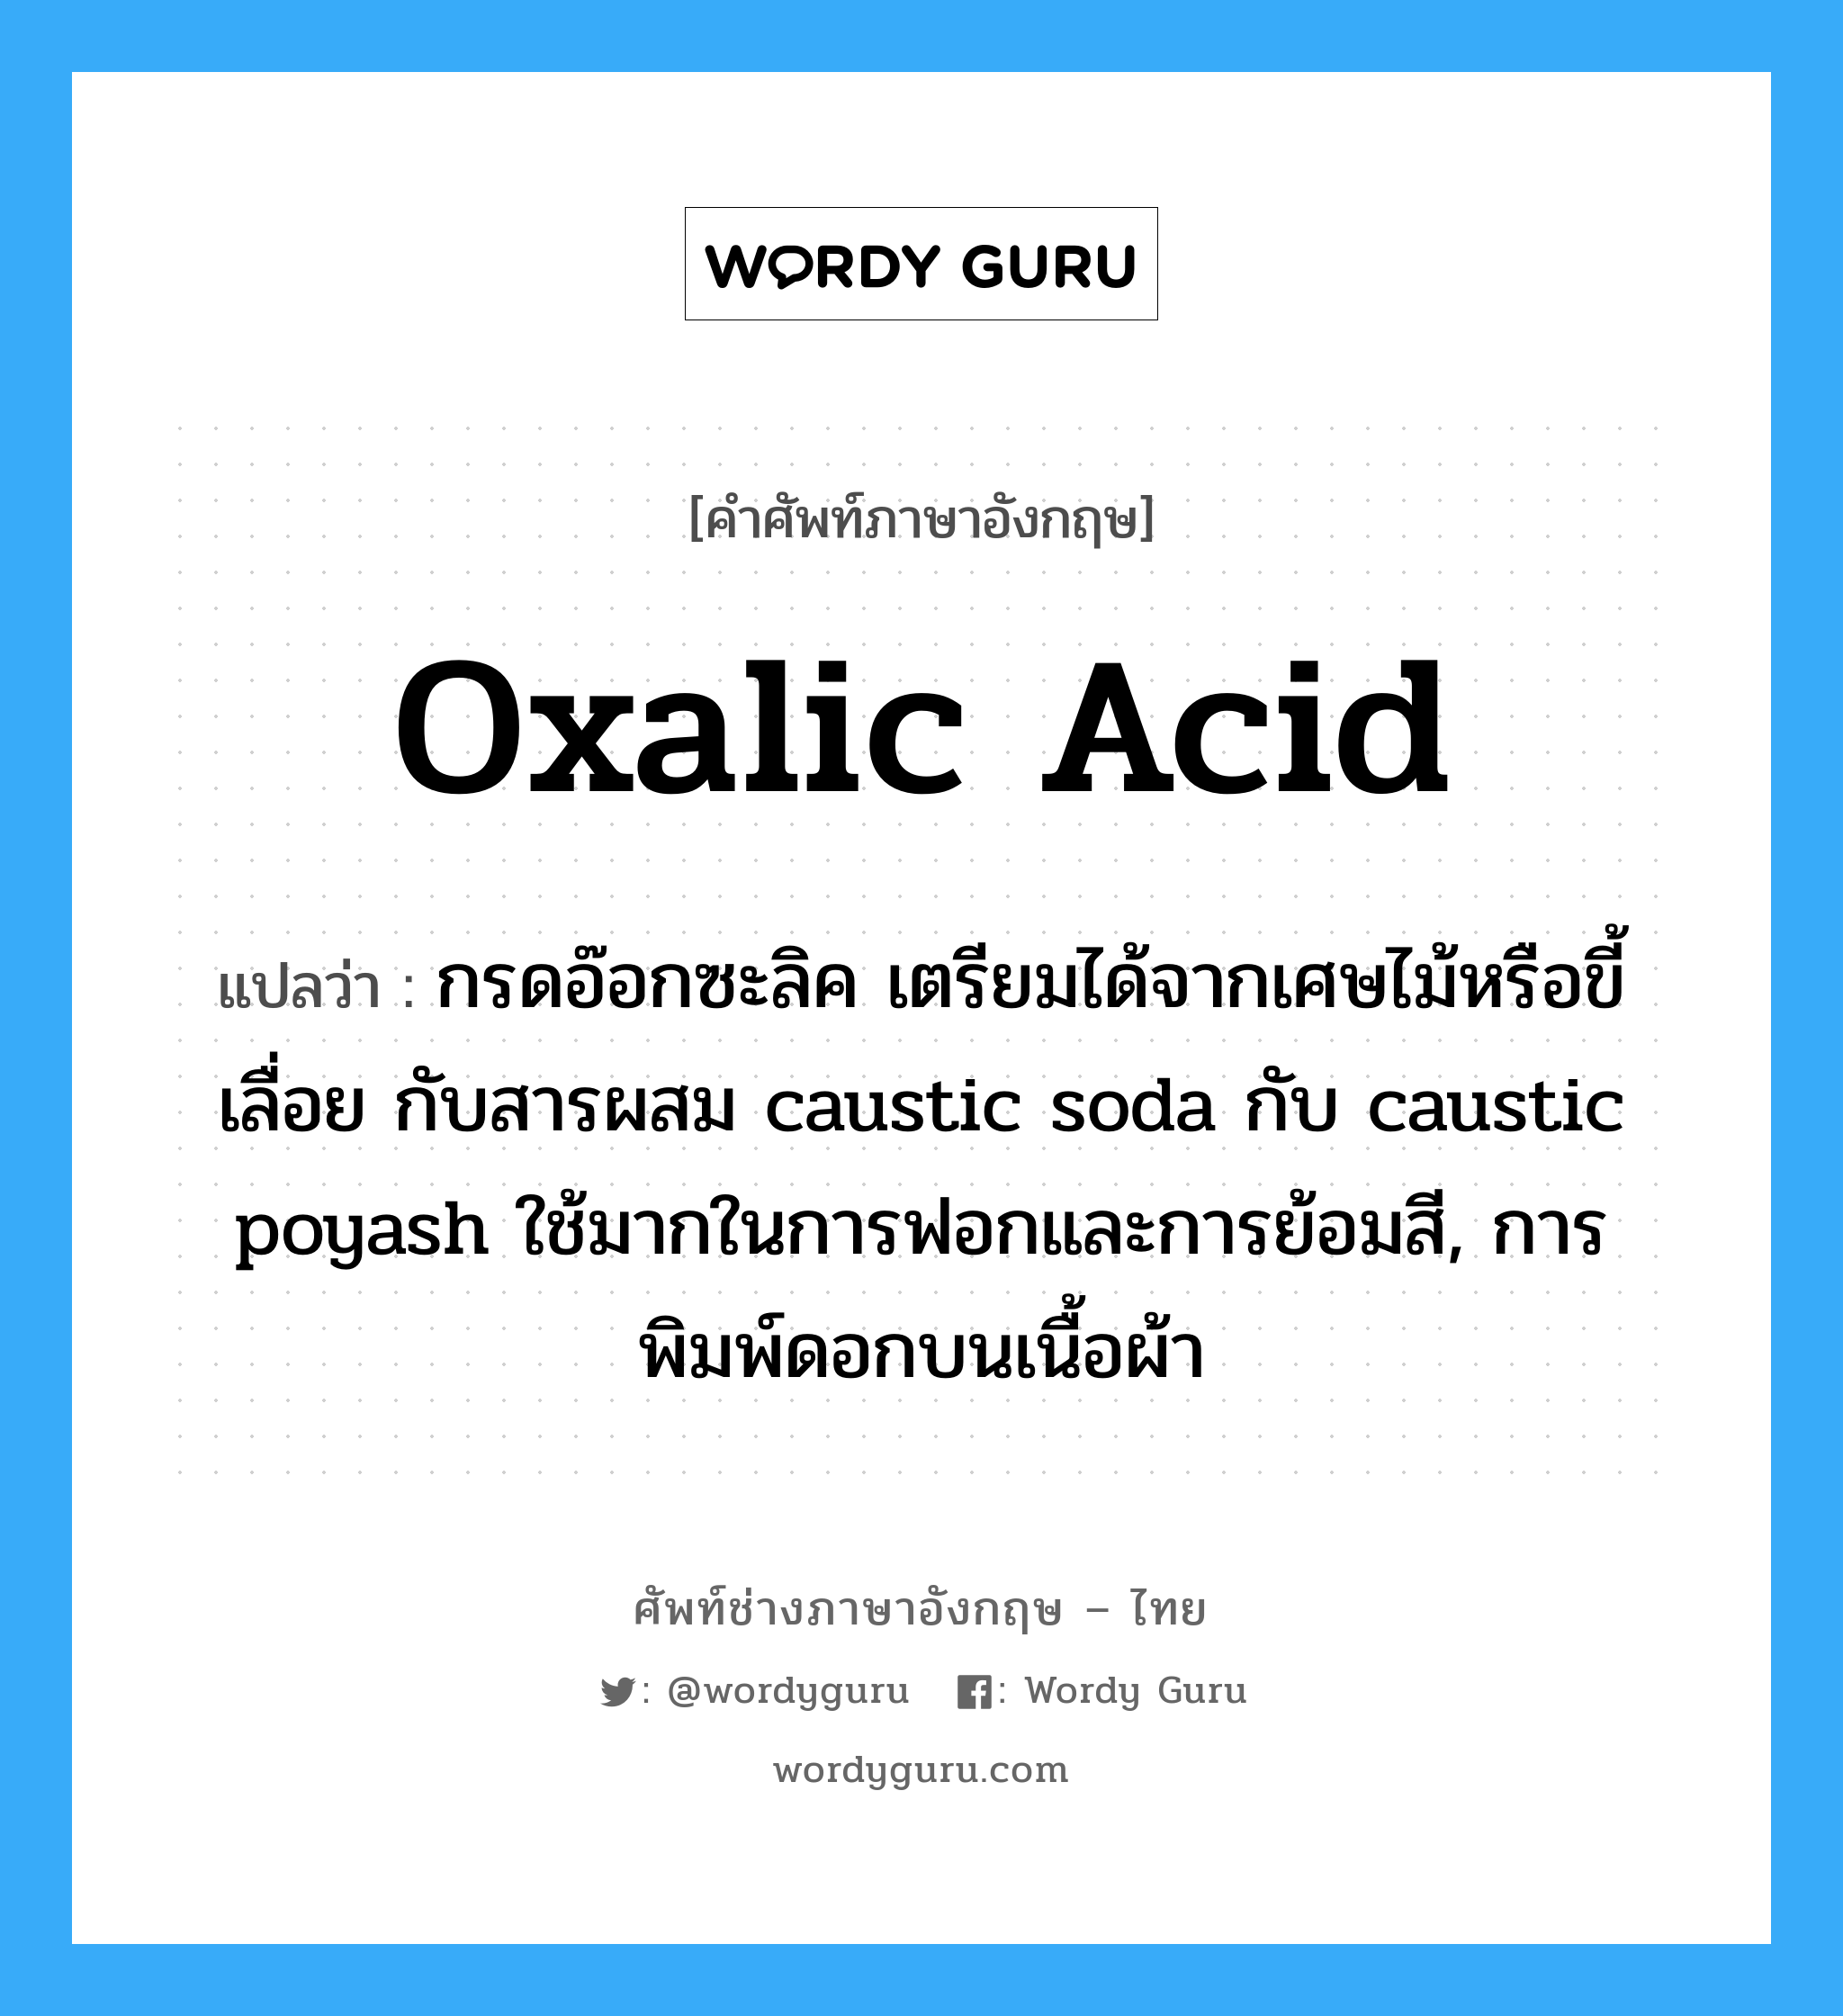 oxalic acid แปลว่า?, คำศัพท์ช่างภาษาอังกฤษ - ไทย oxalic acid คำศัพท์ภาษาอังกฤษ oxalic acid แปลว่า กรดอ๊อกซะลิค เตรียมได้จากเศษไม้หรือขี้เลื่อย กับสารผสม caustic soda กับ caustic poyash ใช้มากในการฟอกและการย้อมสี, การพิมพ์ดอกบนเนื้อผ้า